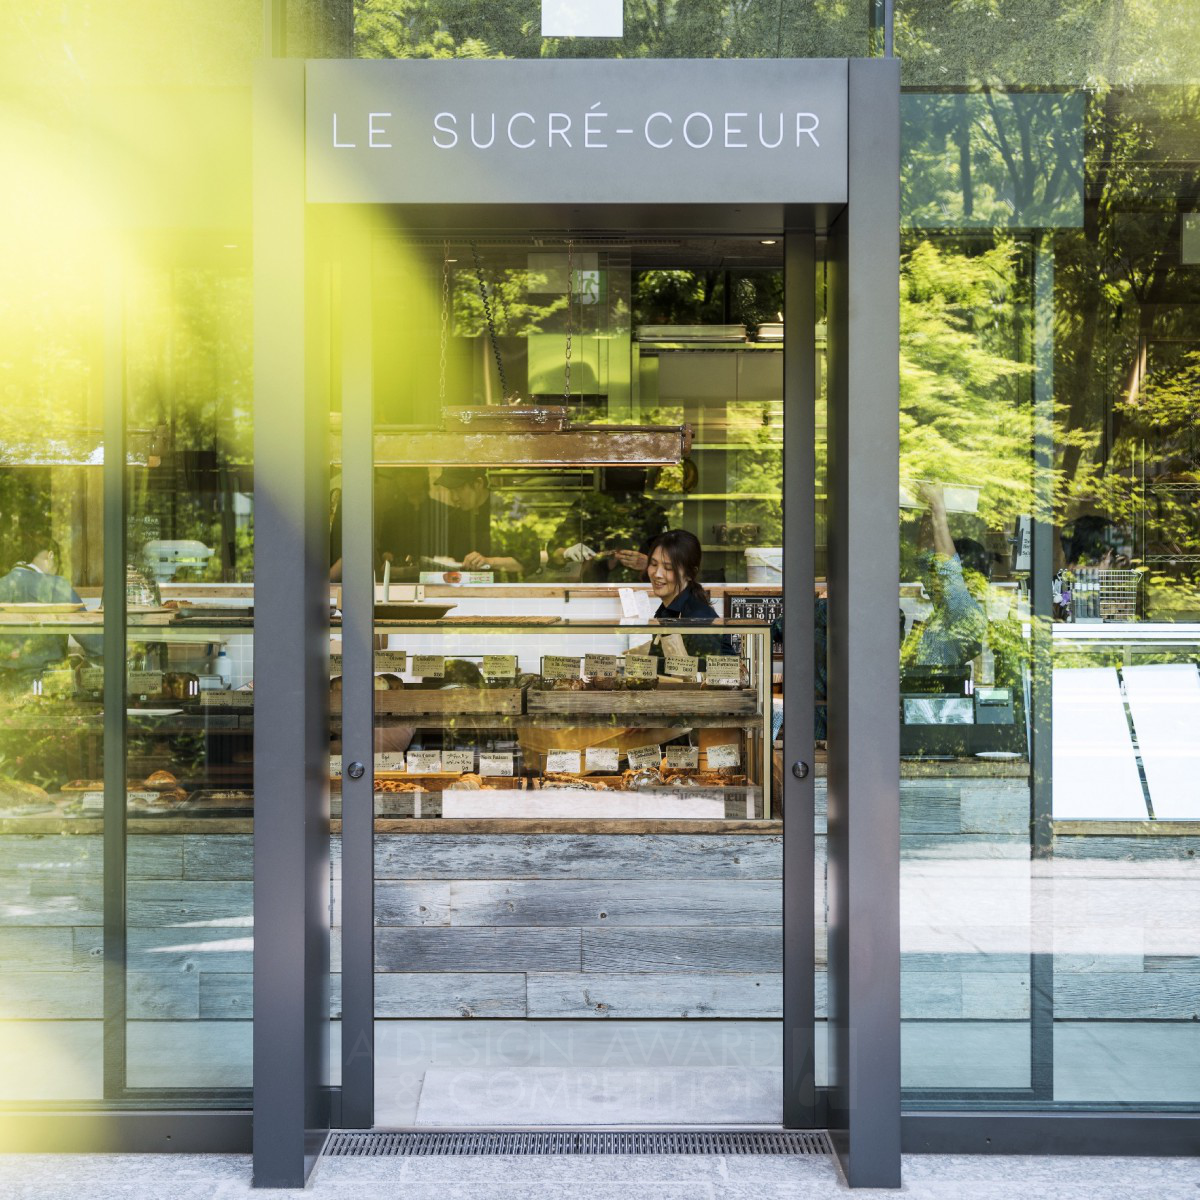  Le Sucre-Coeur <b> bakery